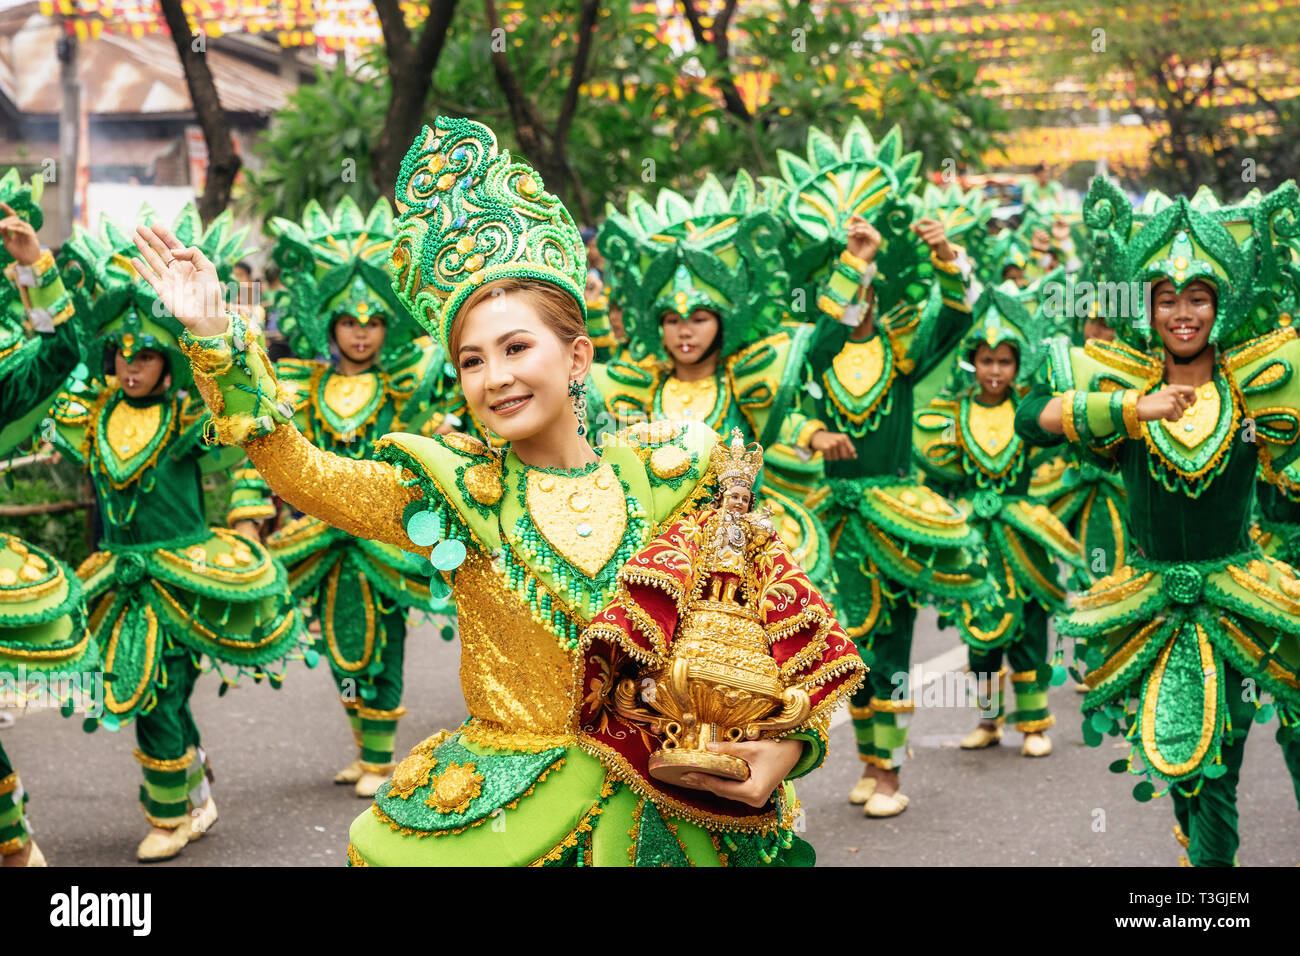 Cebu City, Philippinen - Januar 20, 2019: Straße Tänzer in leuchtend bunte Kostüme beteiligen sich an der Parade am Sinulog Fest. Stockfoto